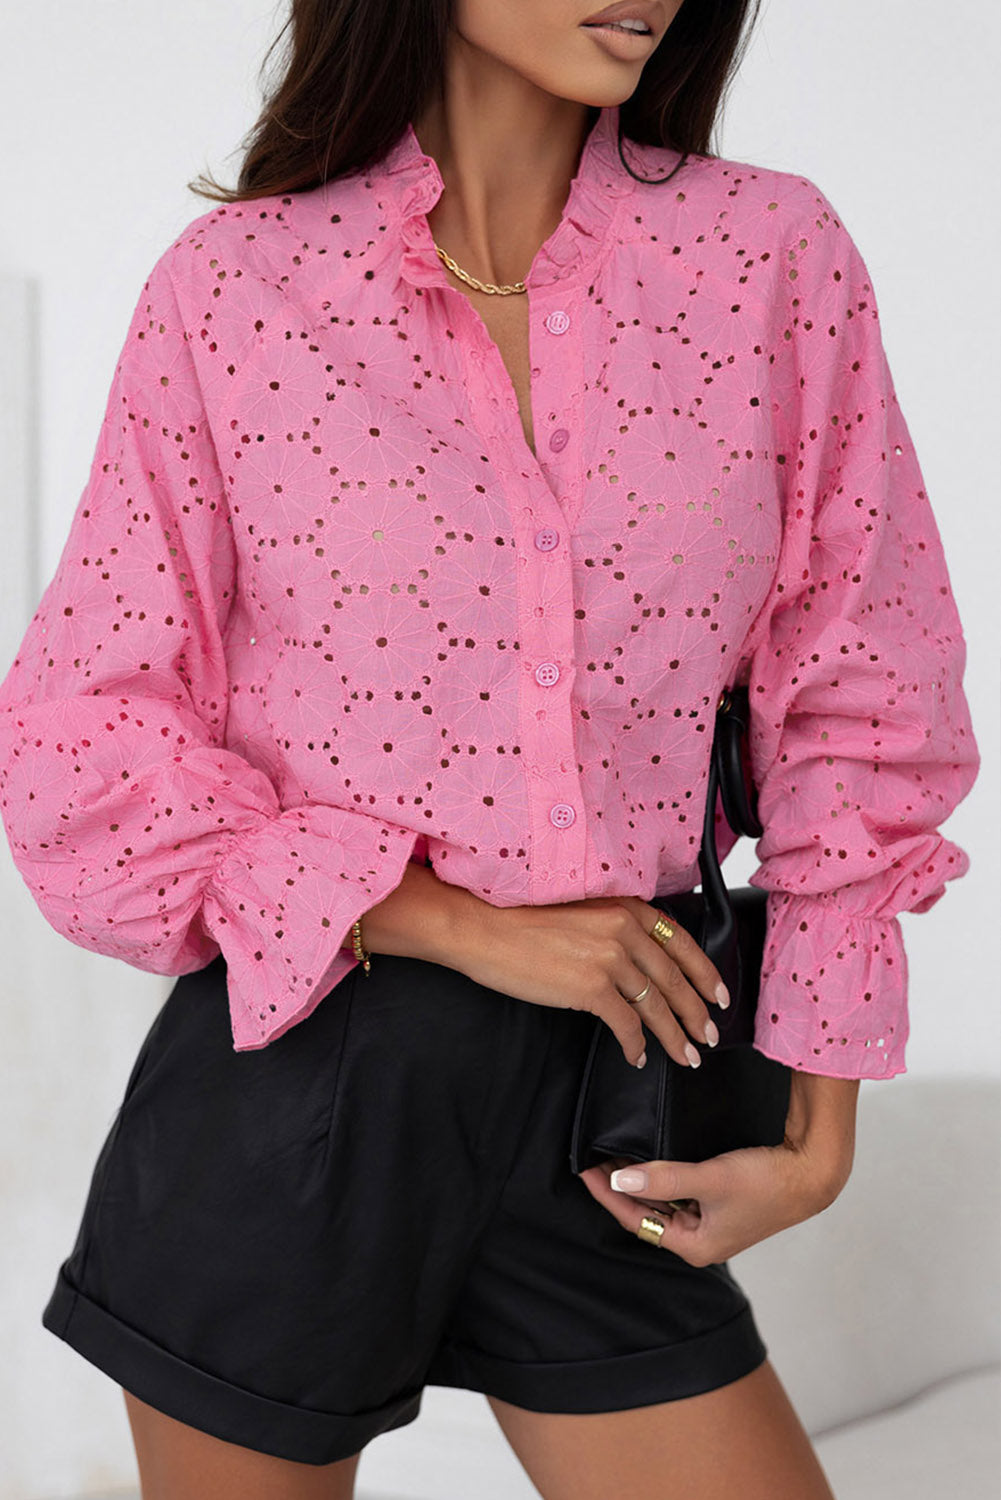 Rožnata izdolbena srajca z vezenimi cvetlicami